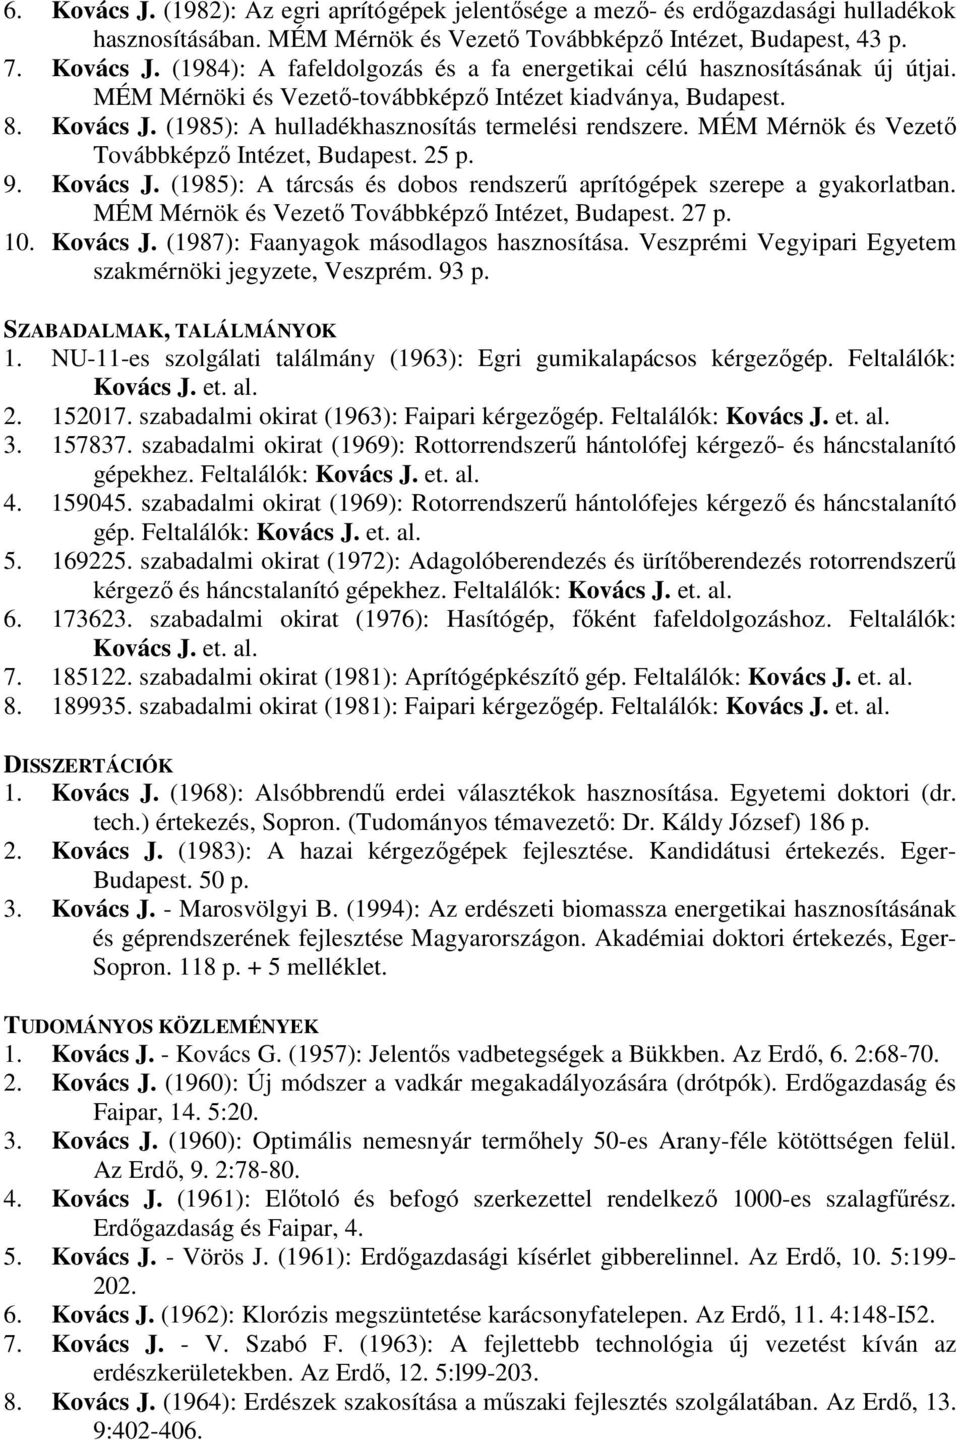 MÉM Mérnök és Vezető Továbbképző Intézet, Budapest. 27 p. 10. Kovács J. (1987): Faanyagok másodlagos hasznosítása. Veszprémi Vegyipari Egyetem szakmérnöki jegyzete, Veszprém. 93 p.